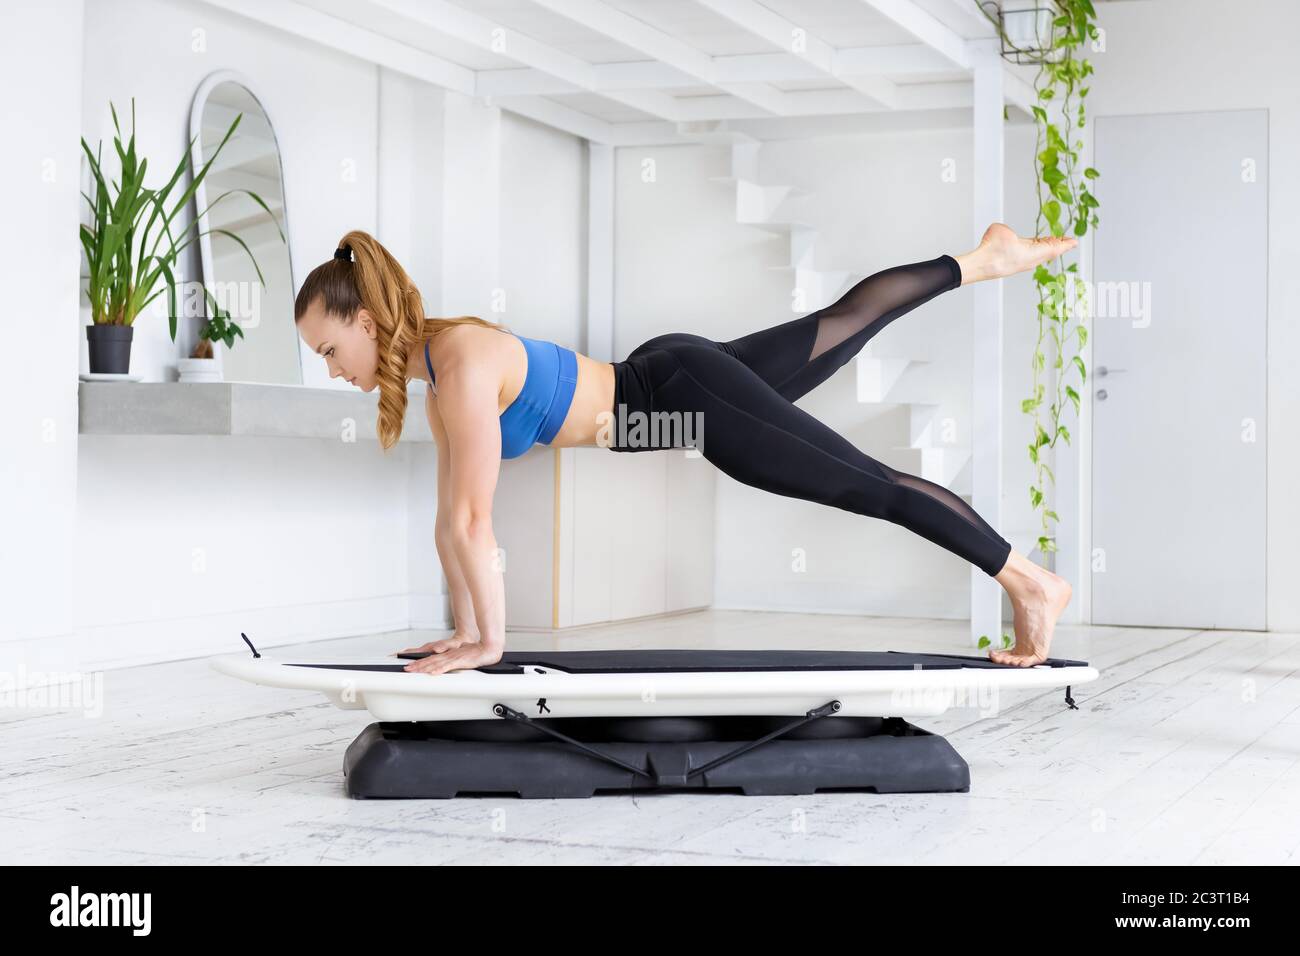 Une jeune femme sportive faisant une planche de surf en forme, un coup de pied yoga pose sur un plateau dans une vue latérale dans une salle de gym avec des plantes vertes fraîches dans un état de santé Banque D'Images